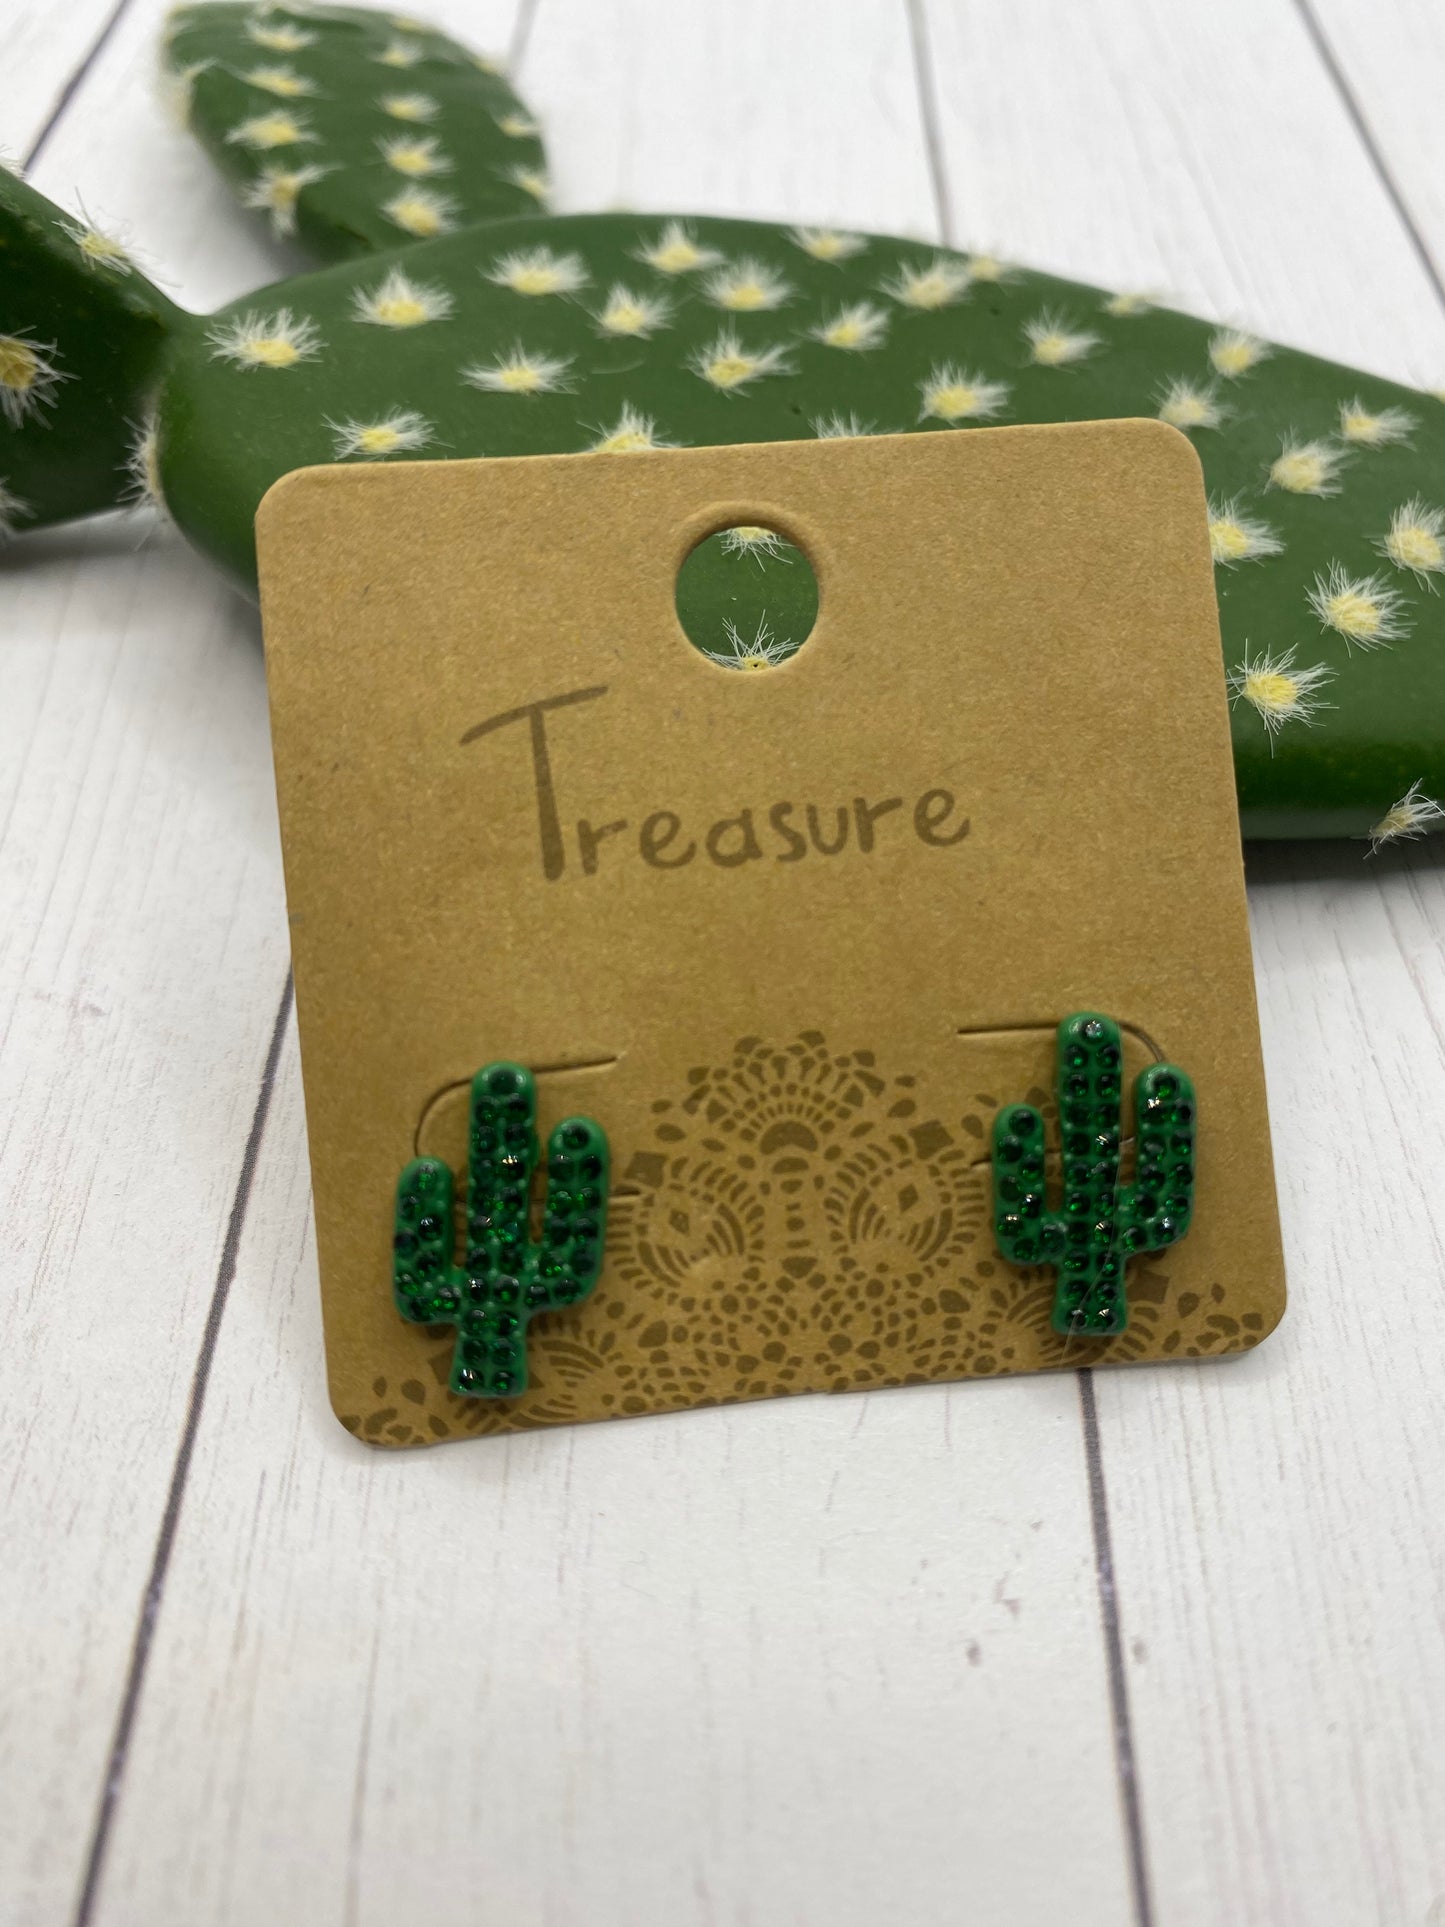 Rhinestone Cactus Earrings